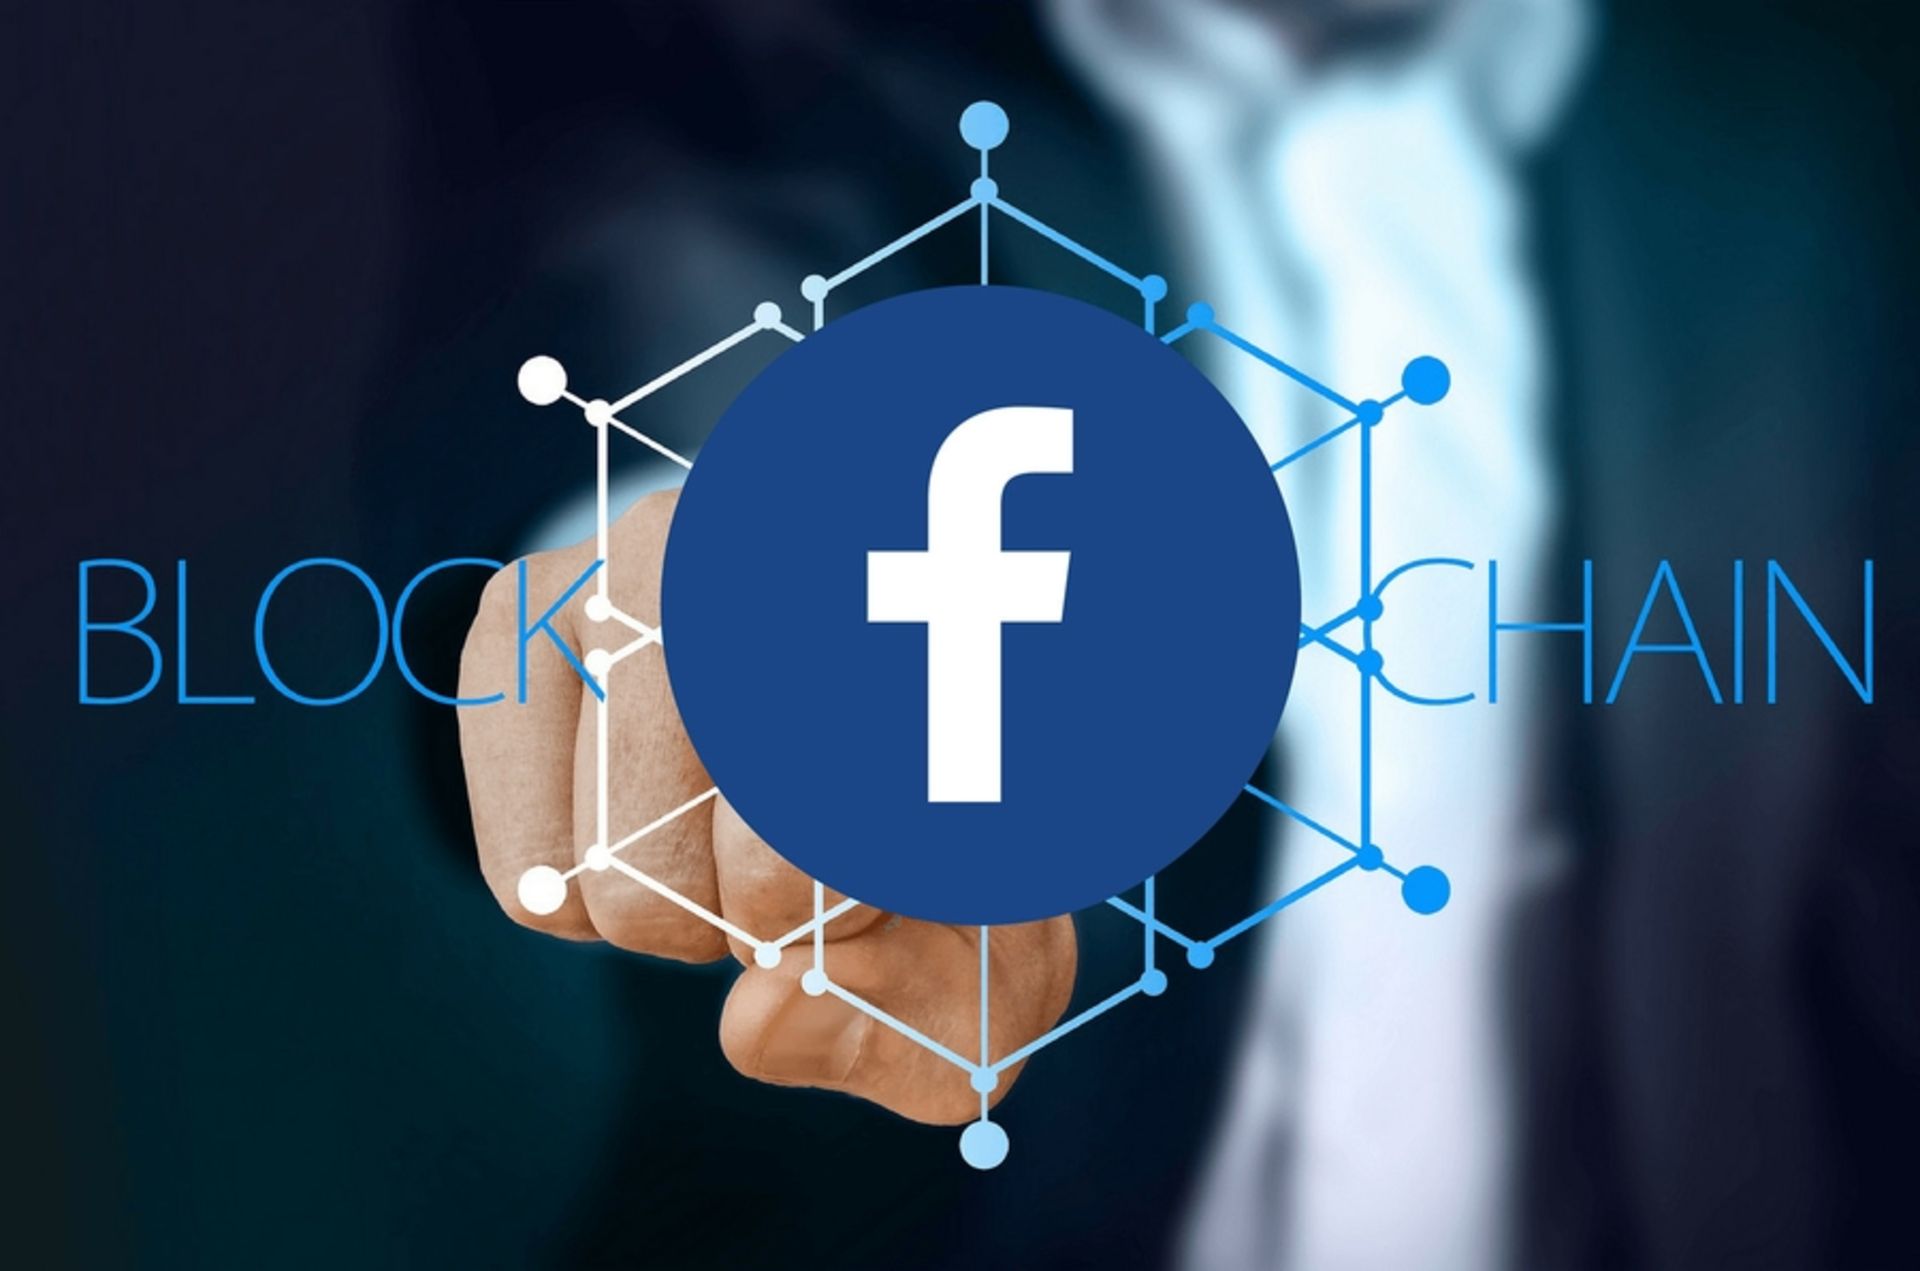 facebook interest in blockchain startups